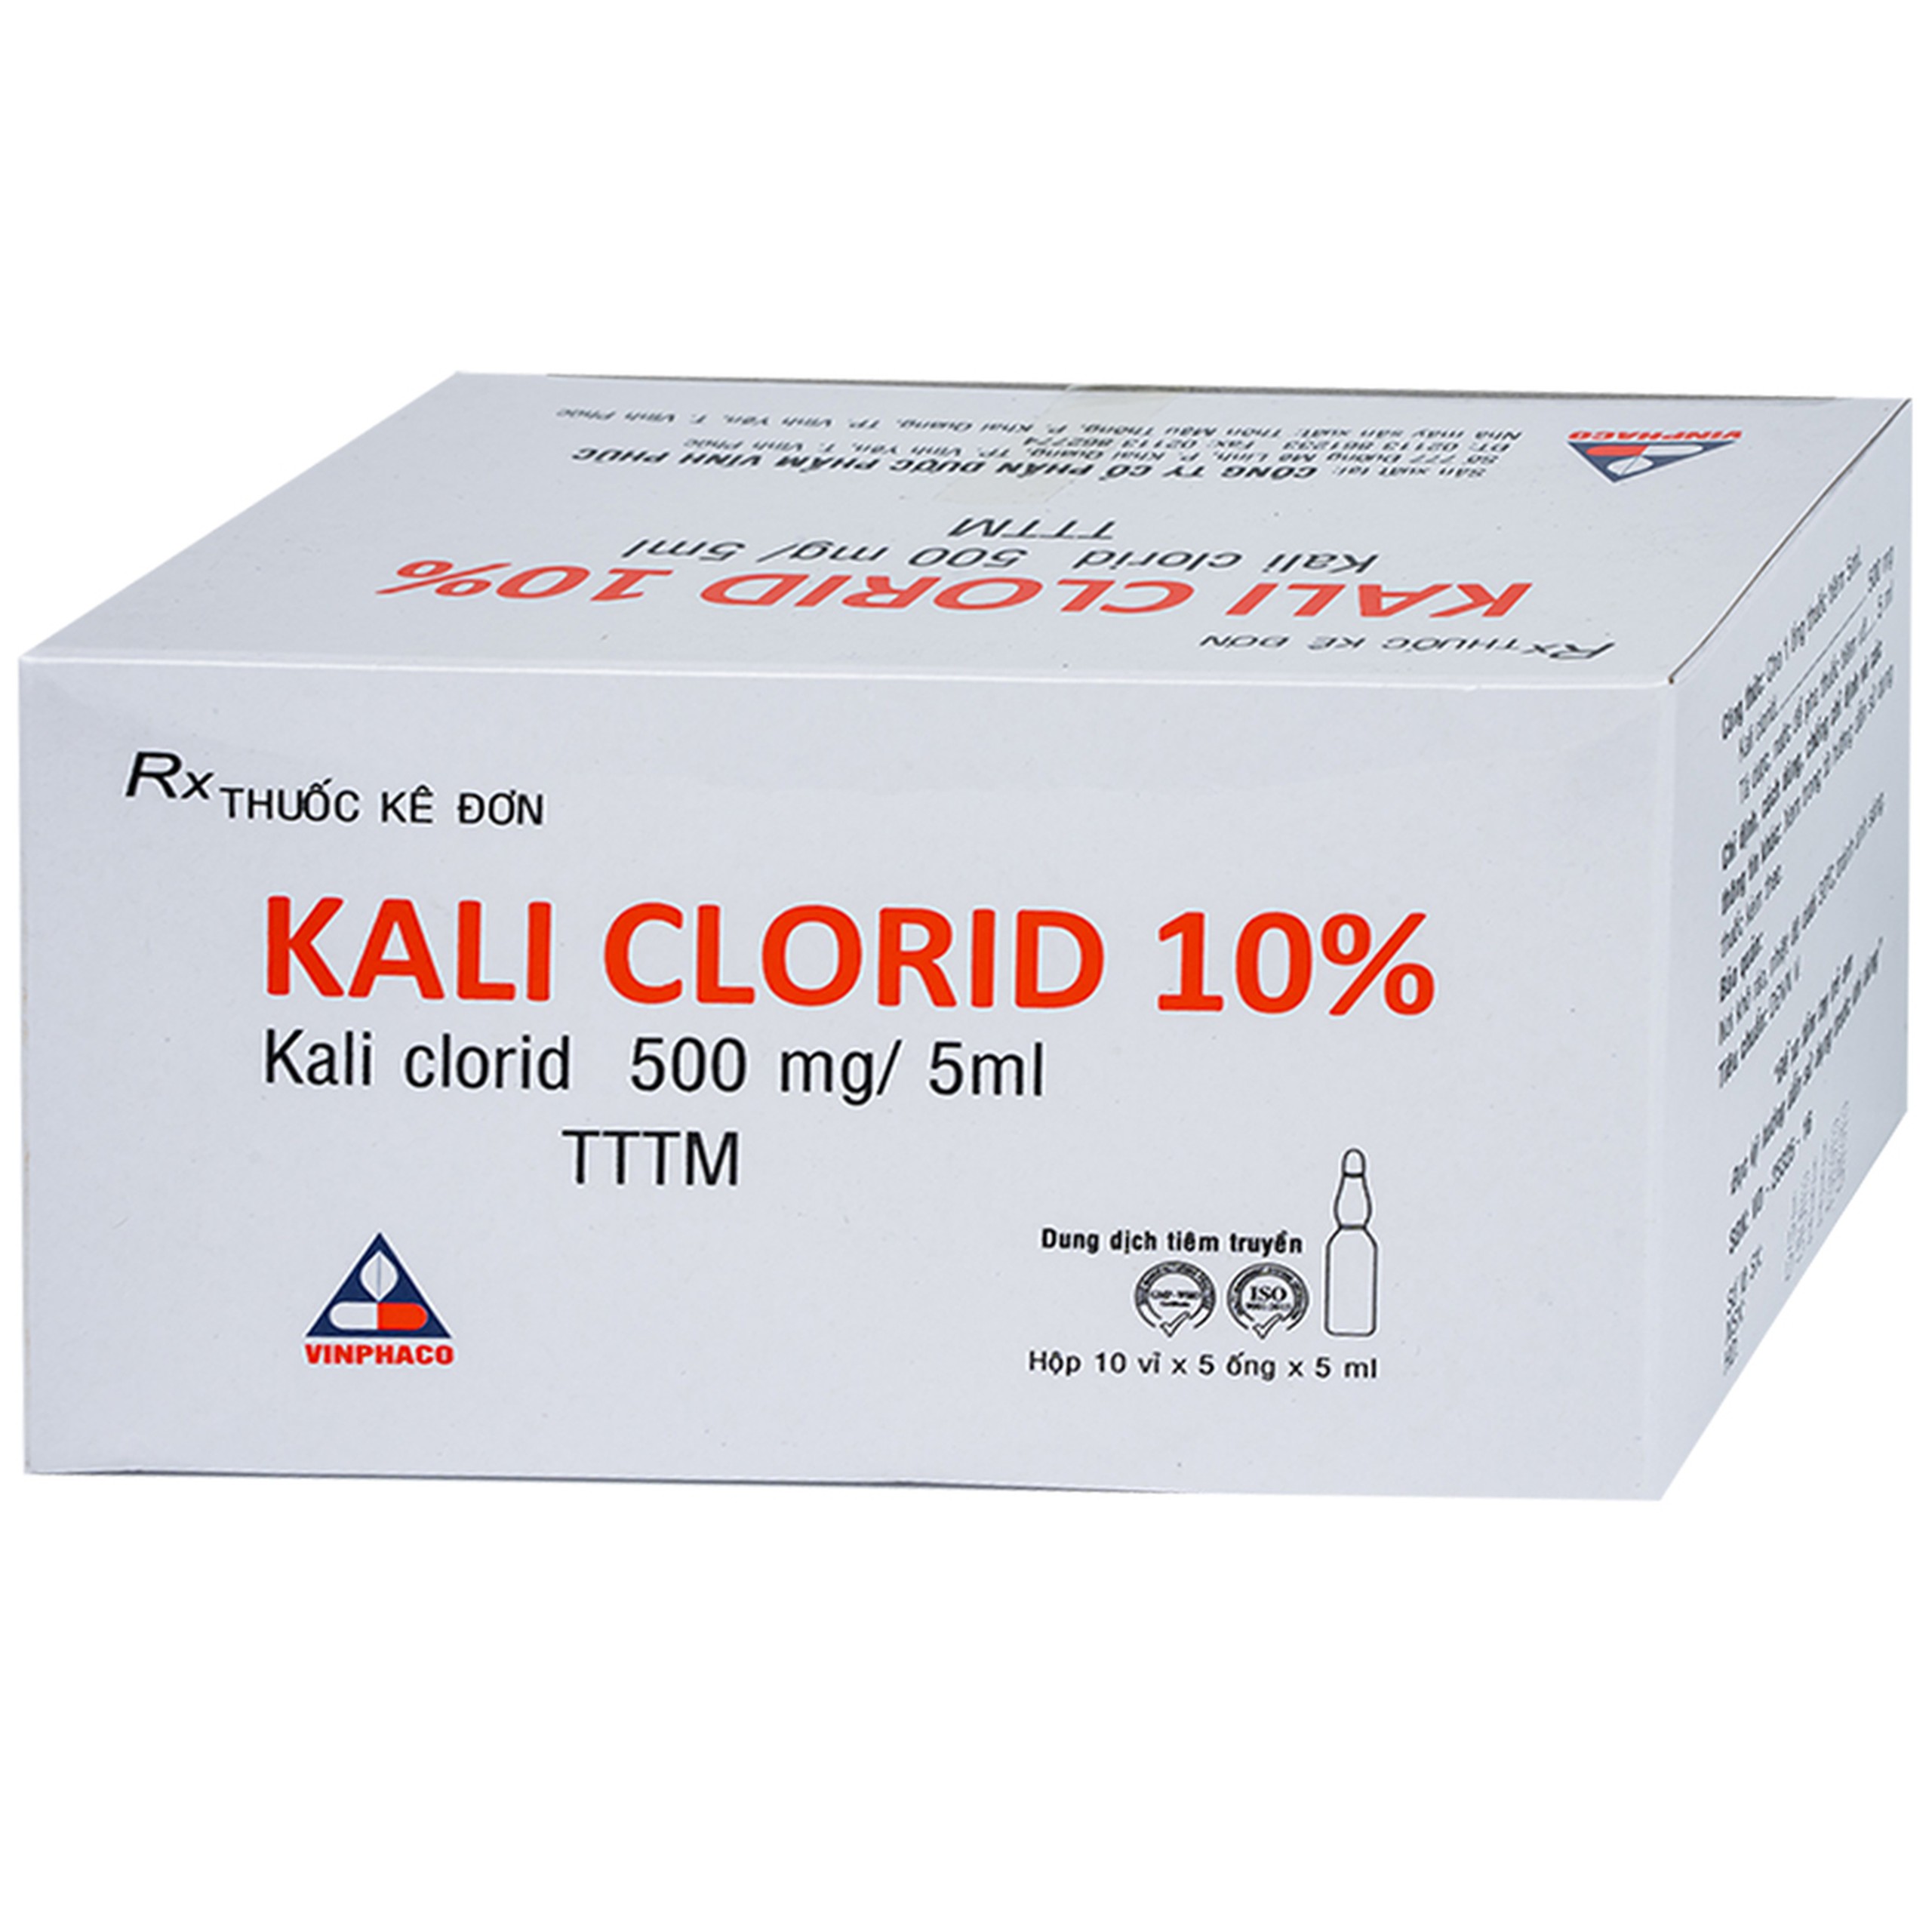 Thuốc Kali Clorid 10% Vinphaco điều trị và phòng chứng giảm Kali huyết (10 vỉ x 5 ống x 5ml)